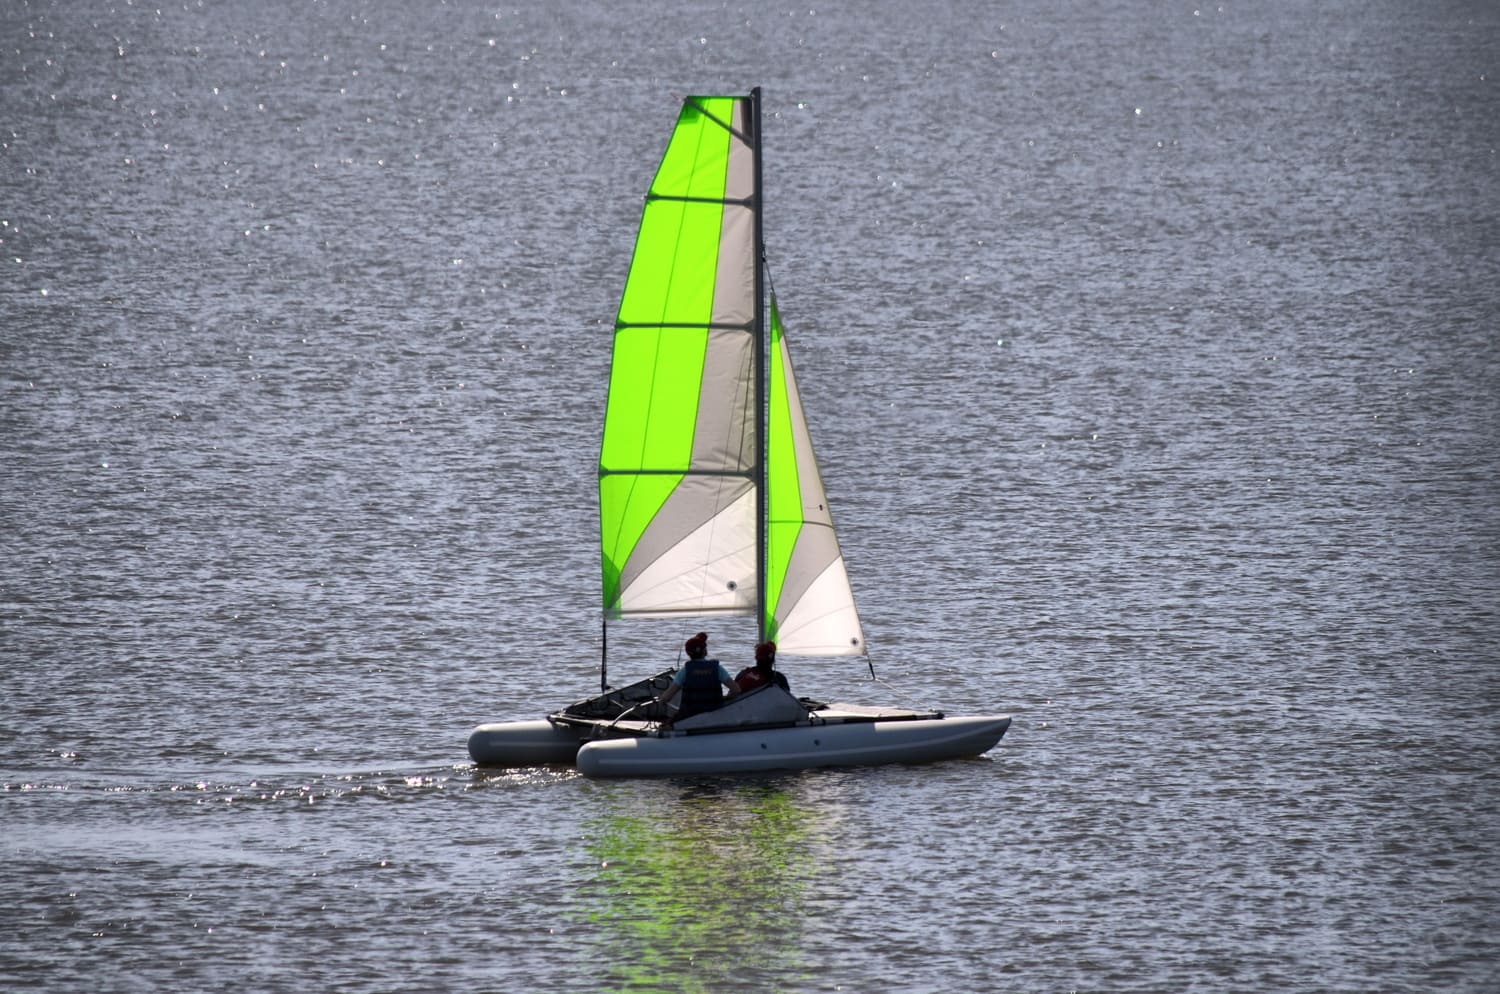 Un catamarán Ducky16 atracado en la orilla de un lago. El Ducky16 es un catamarán familiar versátil diseñado para los amantes de la navegación